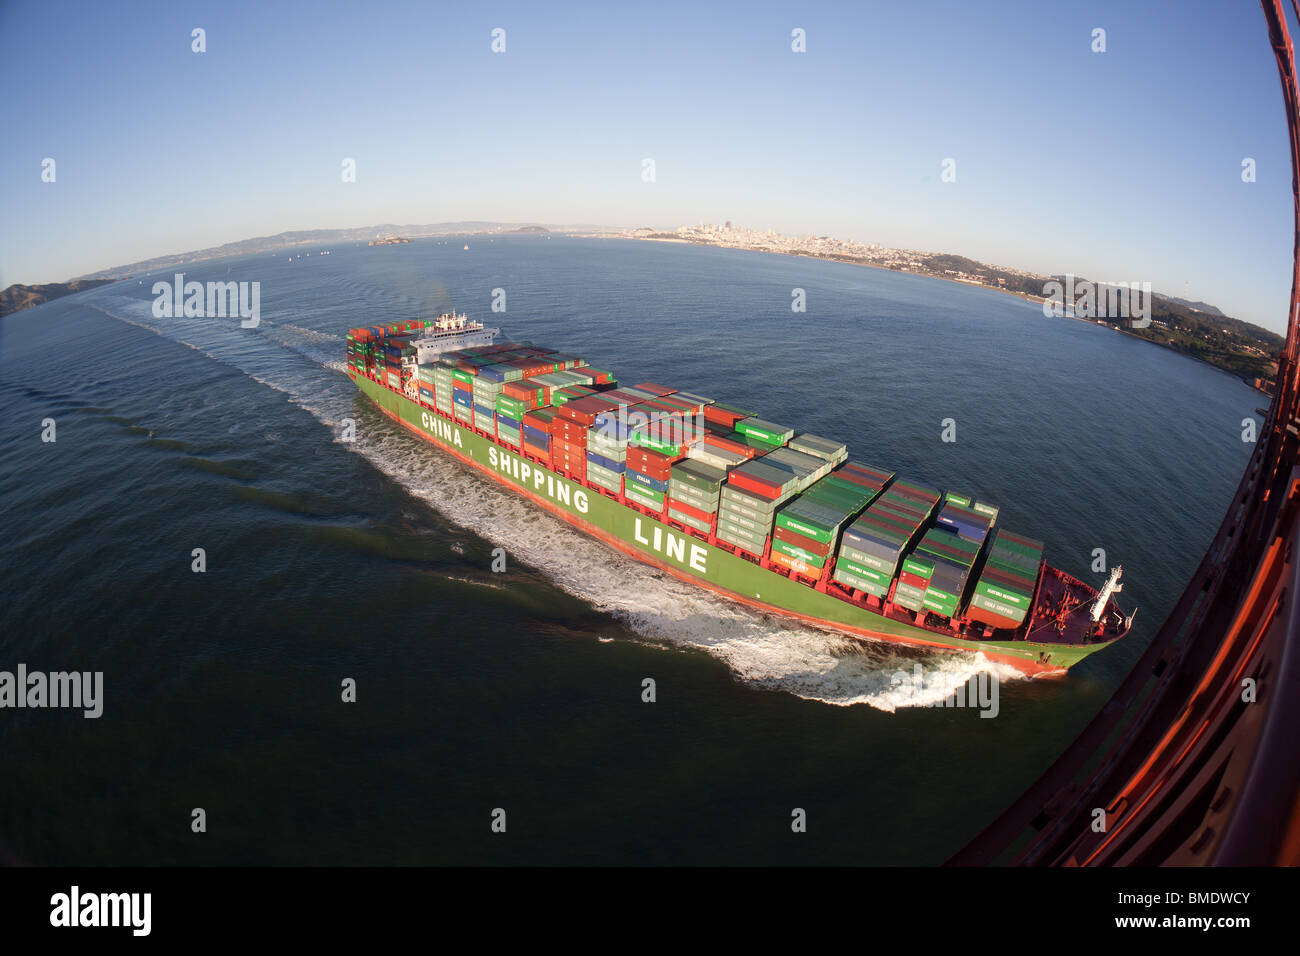 Photo spectaculaire d'un cargo qu'il navigue sous le golden gate bridge, laissant la baie de San Francisco. Banque D'Images